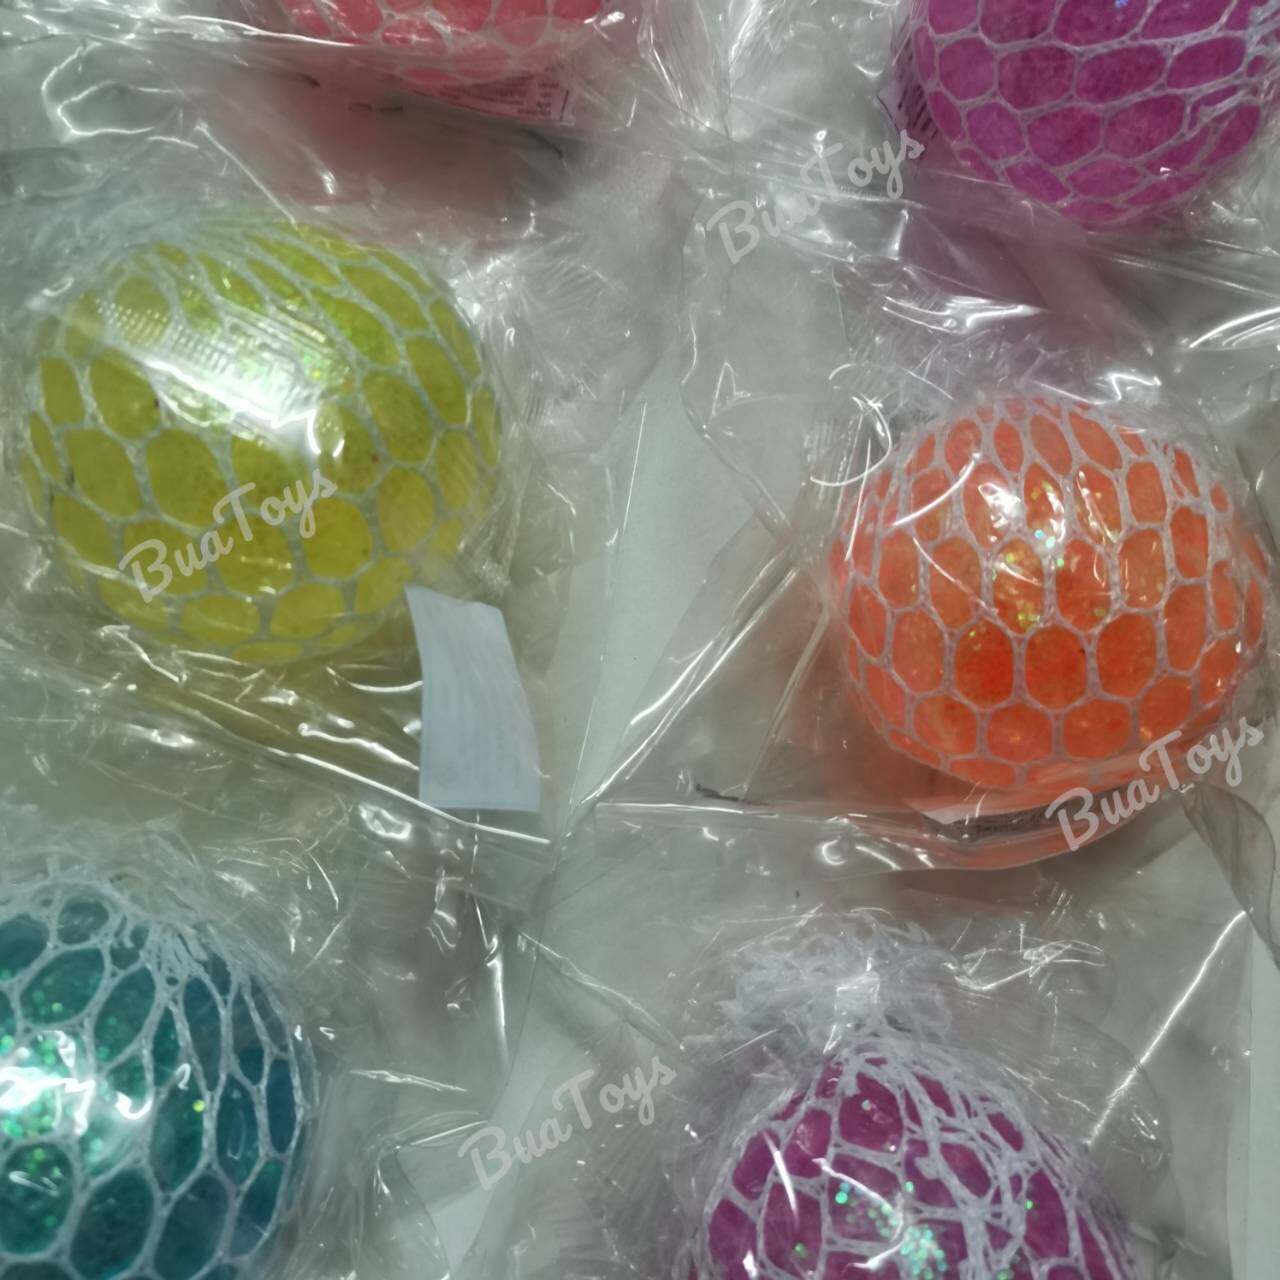 บอลบีบ 1ชิ้น / ของเล่น บอลบีบ คลายเครียด (รุ่นประกายเพชร หลากสี) บอลบีบออกกำลังมือ บอลบีบตาข่าย บอลบีบเม็ดหลากสี มีหลายสีคละ สีส่ง